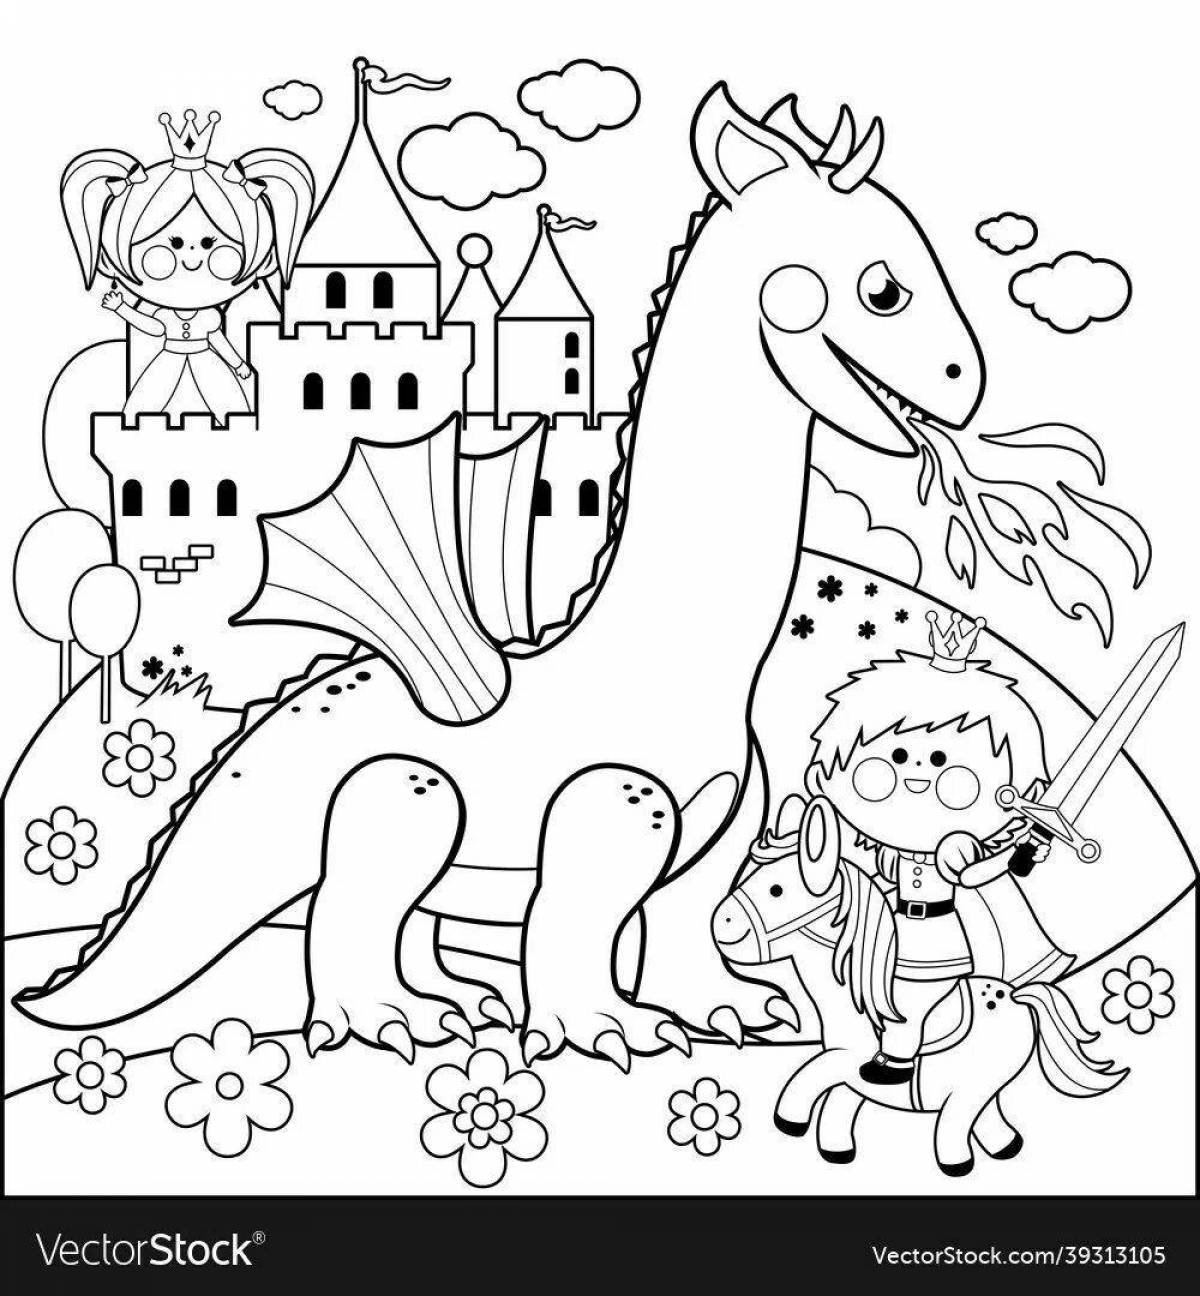 Dazzling coloring princess and dragon